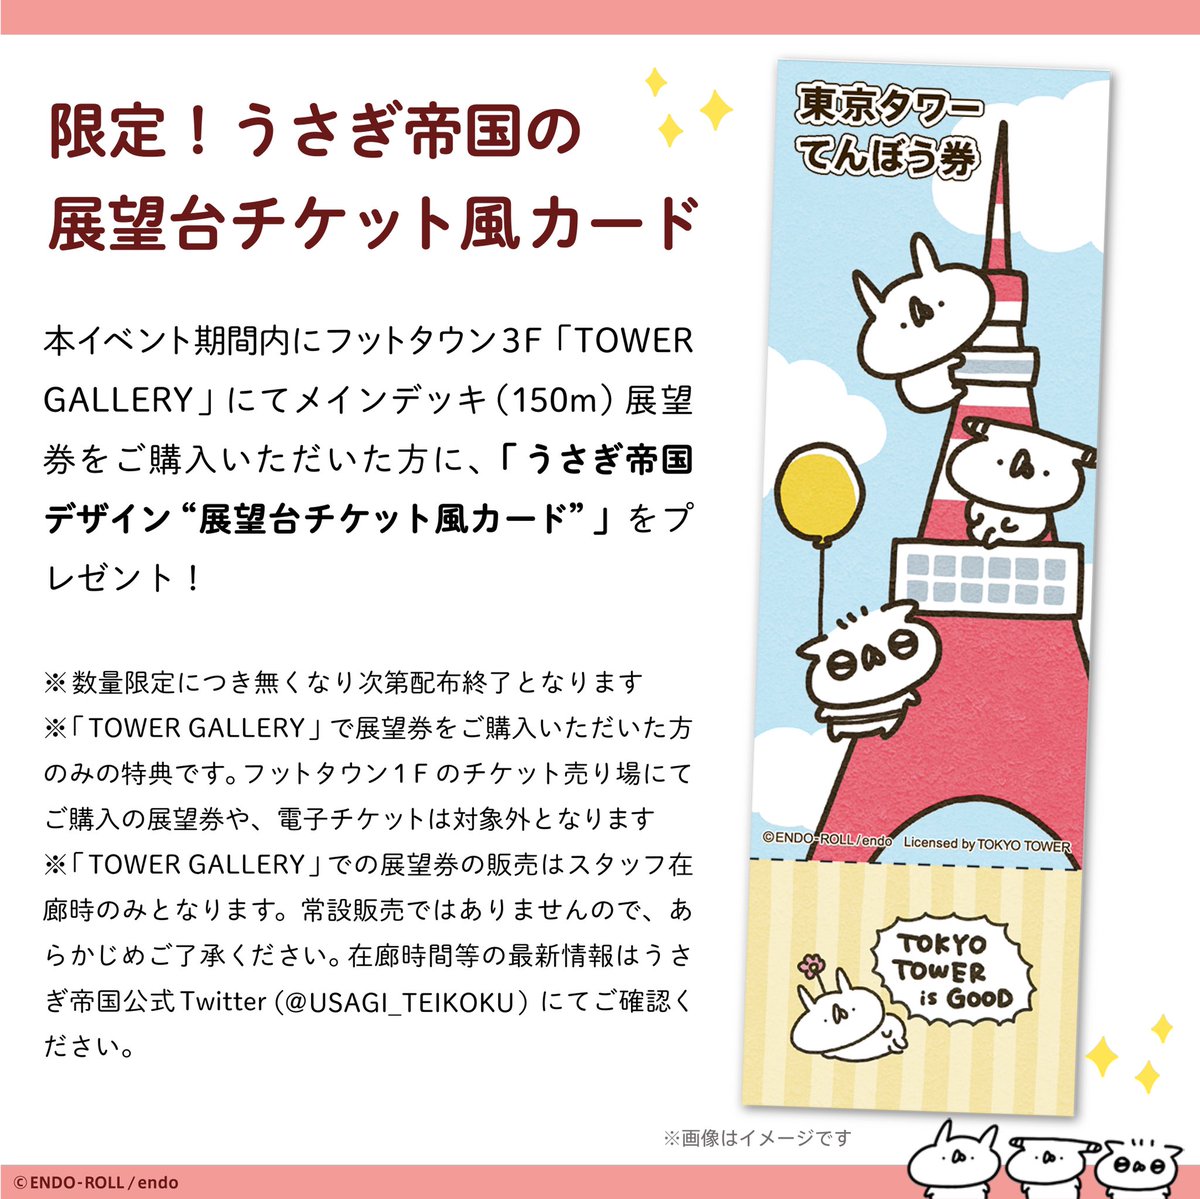 東京タワーコラボグッズや #うさてい7周年 パーチー、展望台チケット風カード、JMAさまコラボキャンペーンの新作グッズなど、もりだくさんです!

ギャラリーだけでなく東京タワー全体で楽しめるイベントです🗼🐰✨

詳細はこちら!
https://t.co/r7FLcc6NAQ

#うさてい秋の芸術祭 